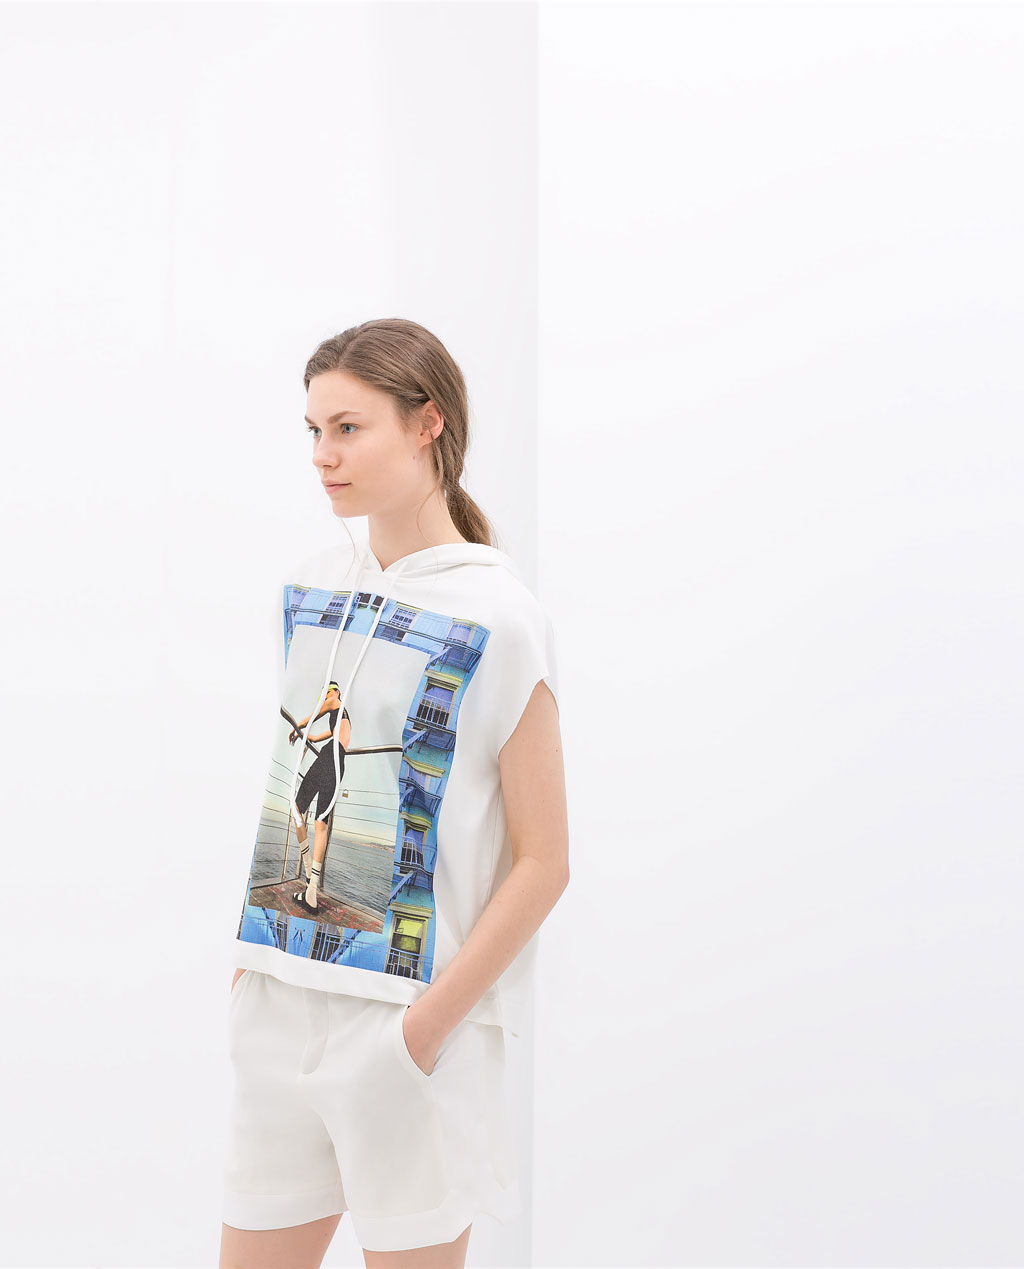 Rebajas de Zara mujer, los “must have” en camisetas estampadas verano 2014 con las últimas tendencias Modalia.es